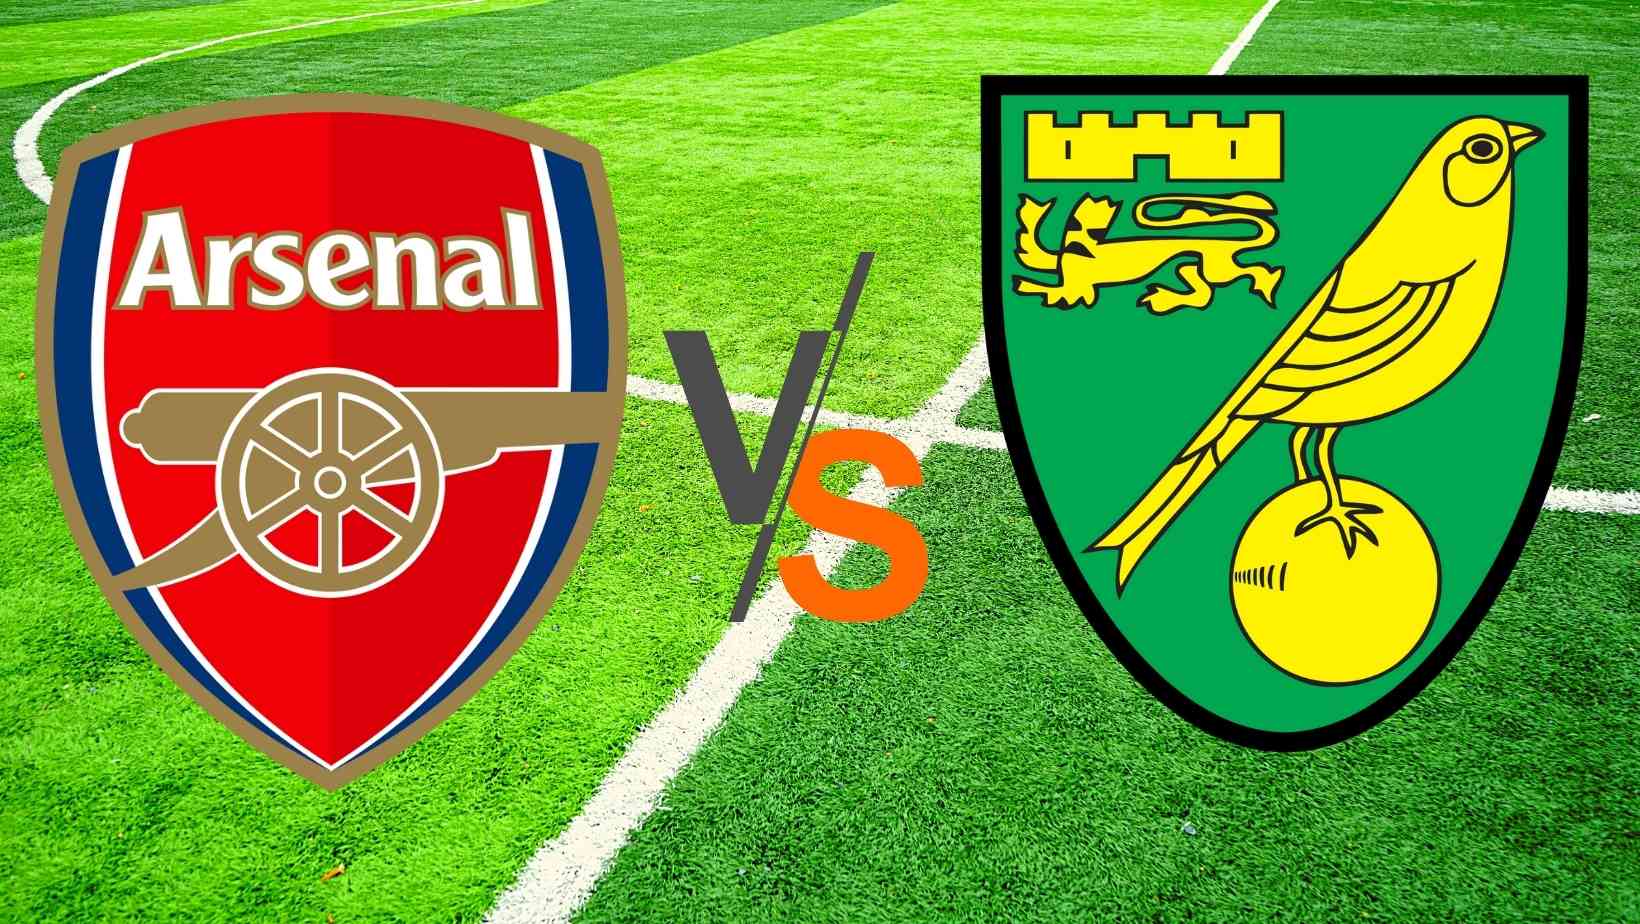 Arsenal vs Norwich City Dream 11 Prediction